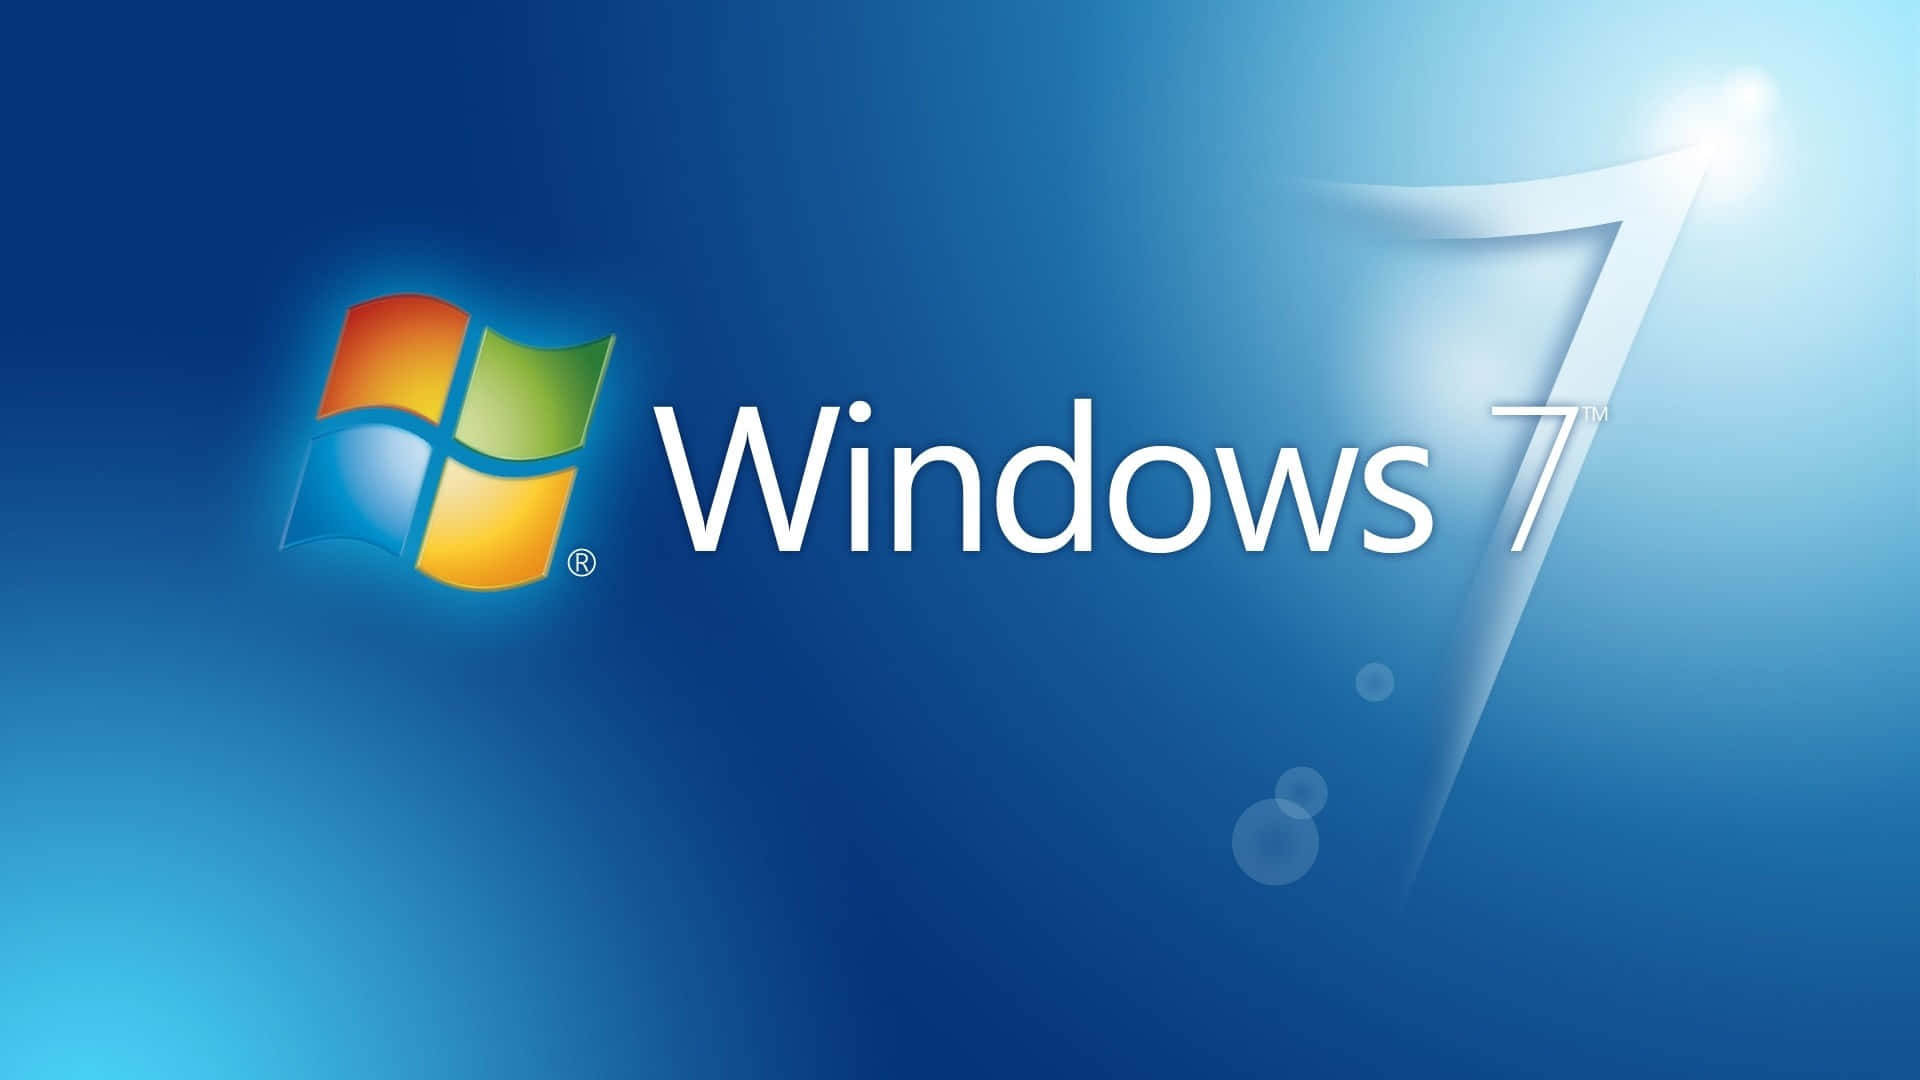 Windows7 Logo På En Blå Baggrund.